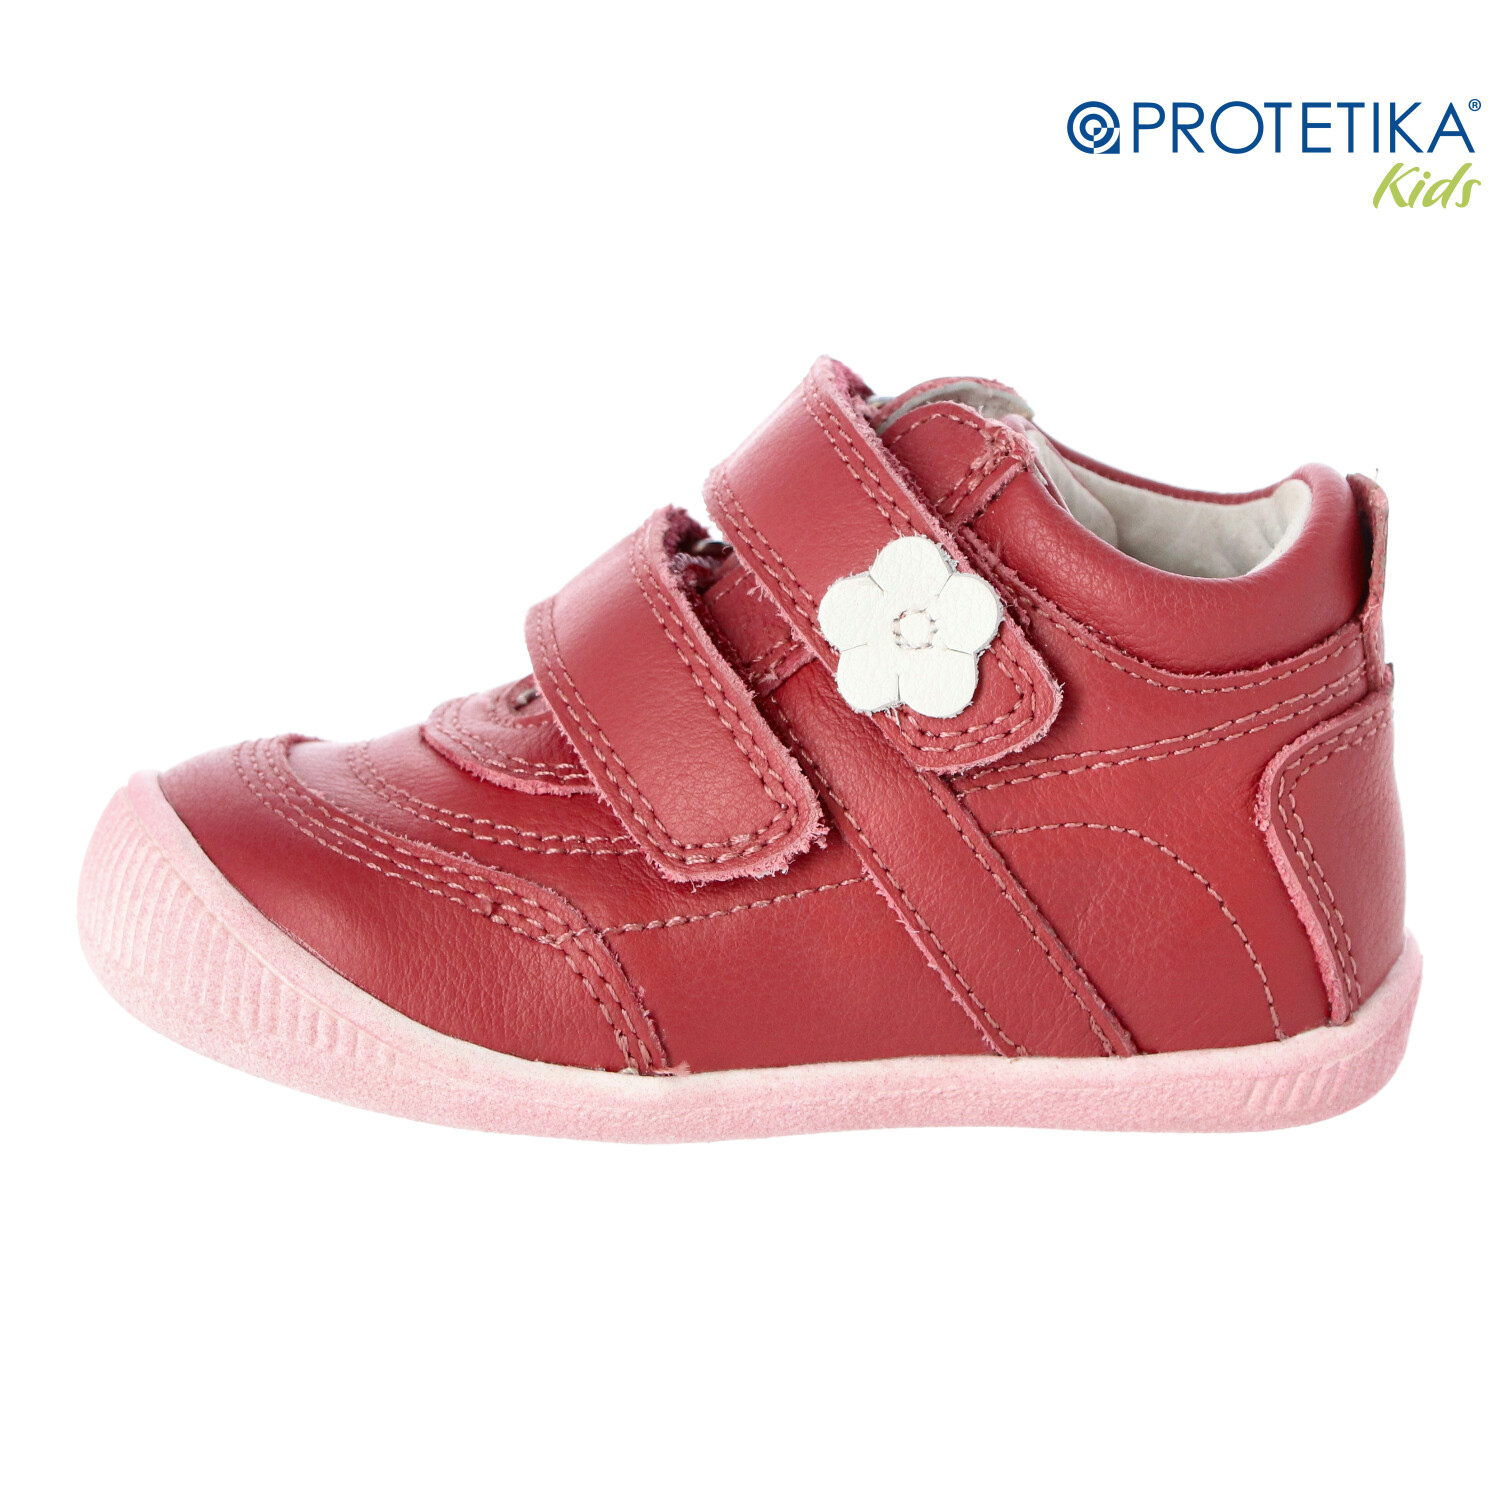 Protetika - topánky AGNES terakota